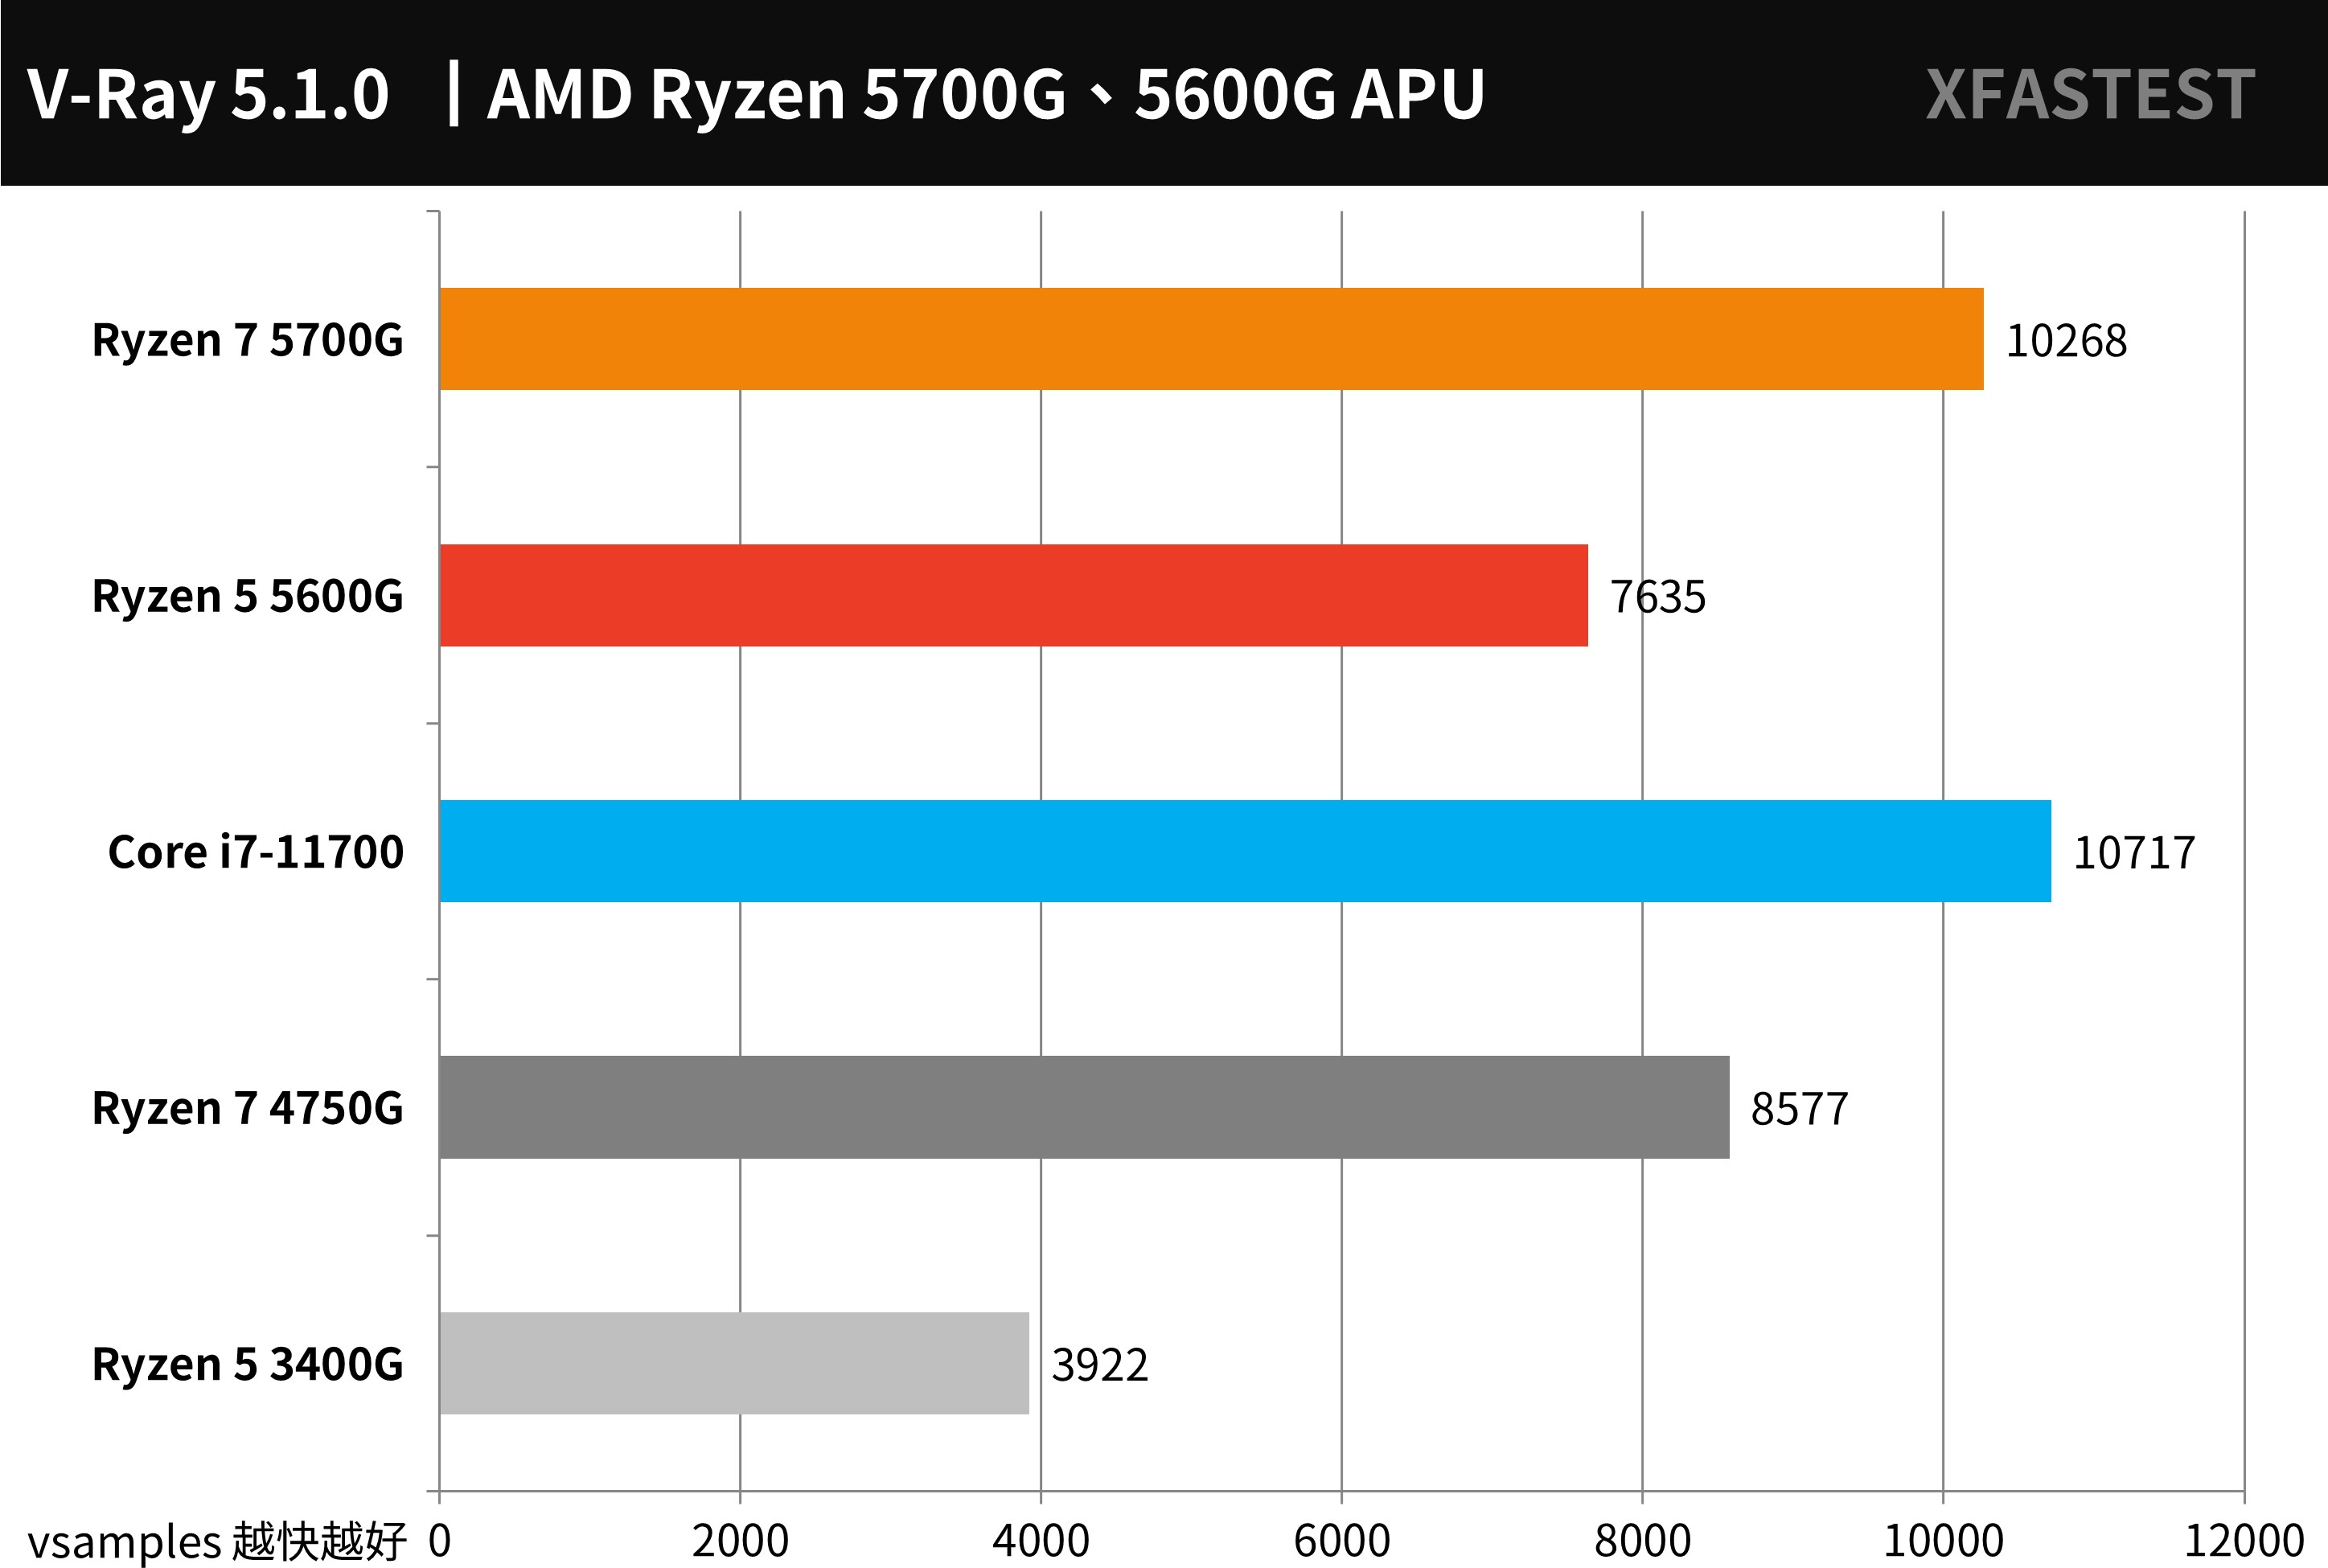 久等了！AMD Ryzen 5700G、5600G 測試報告/ Zen 3 搭Vega 最強遊戲內顯